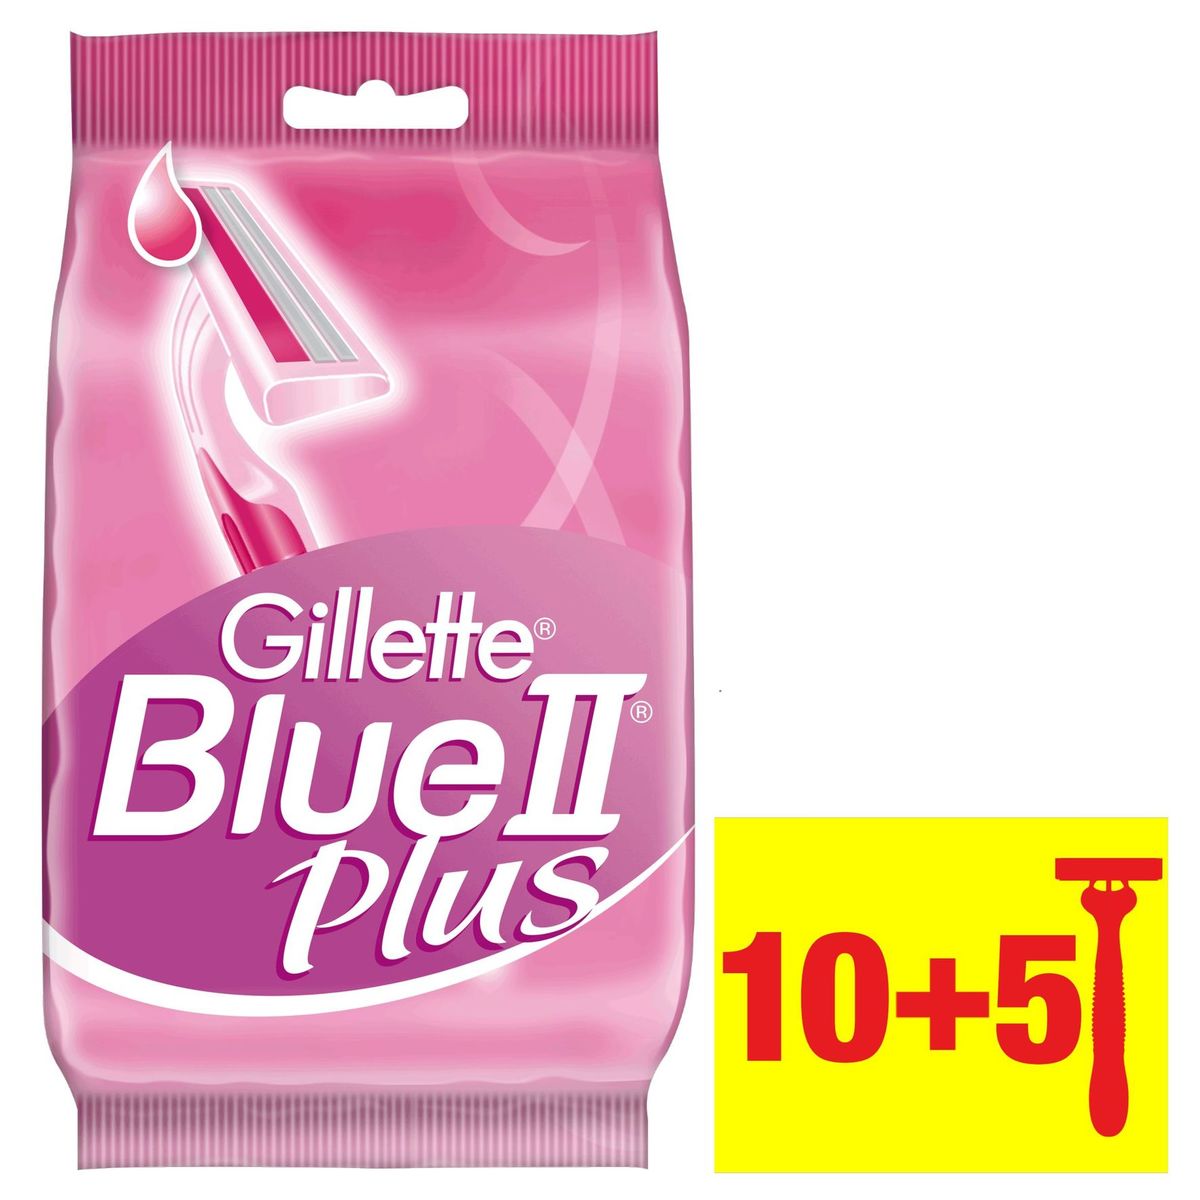 Gillette Venus Rasoirs Jetables Pour Femmes Blue II Plus - Lot de 10+5